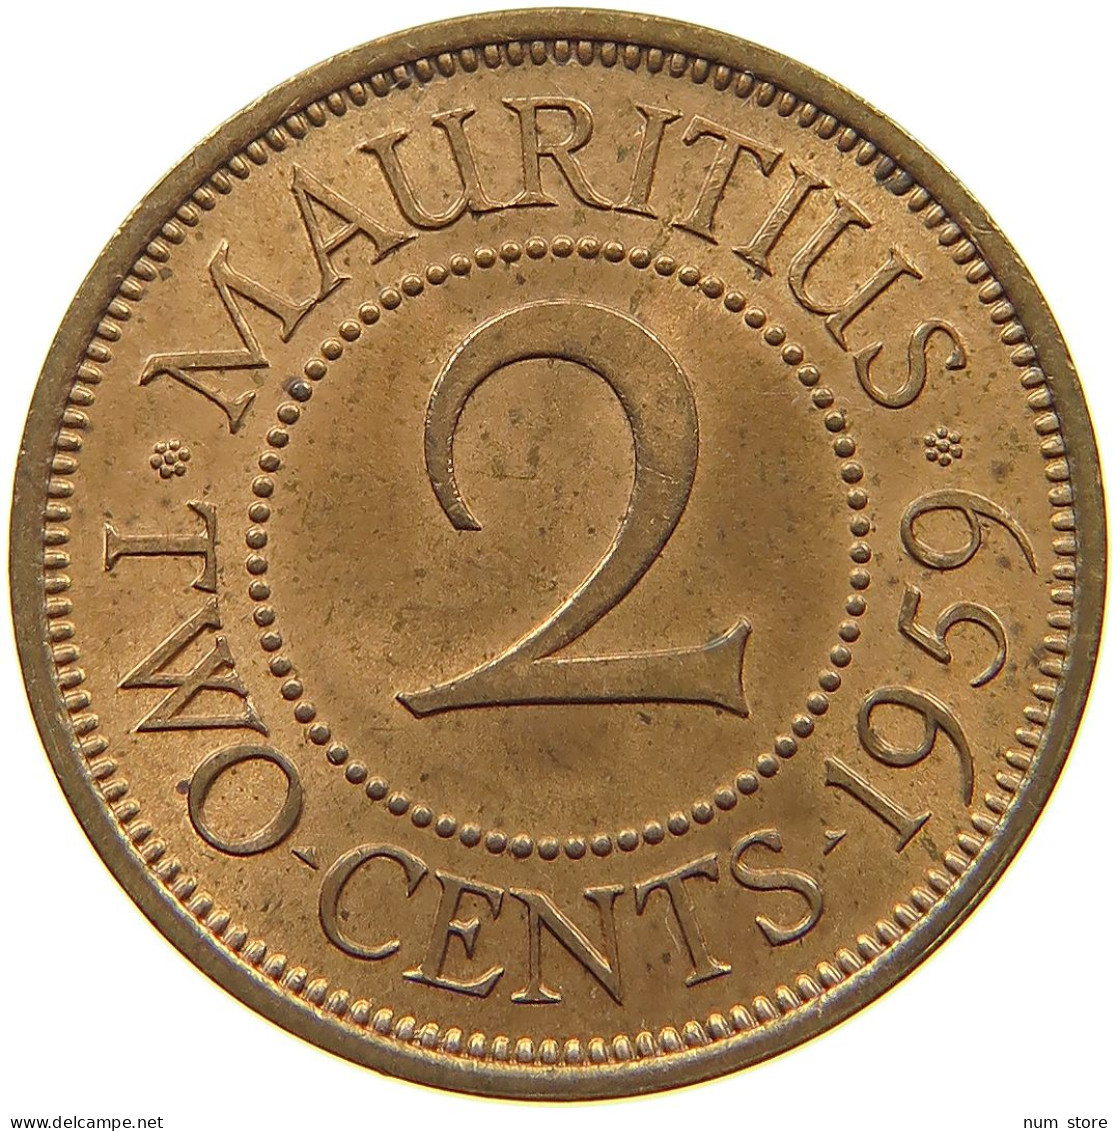 MAURITIUS 2 CENTS 1959 Elizabeth II. (1952-2022) #a095 0495 - Mauritius